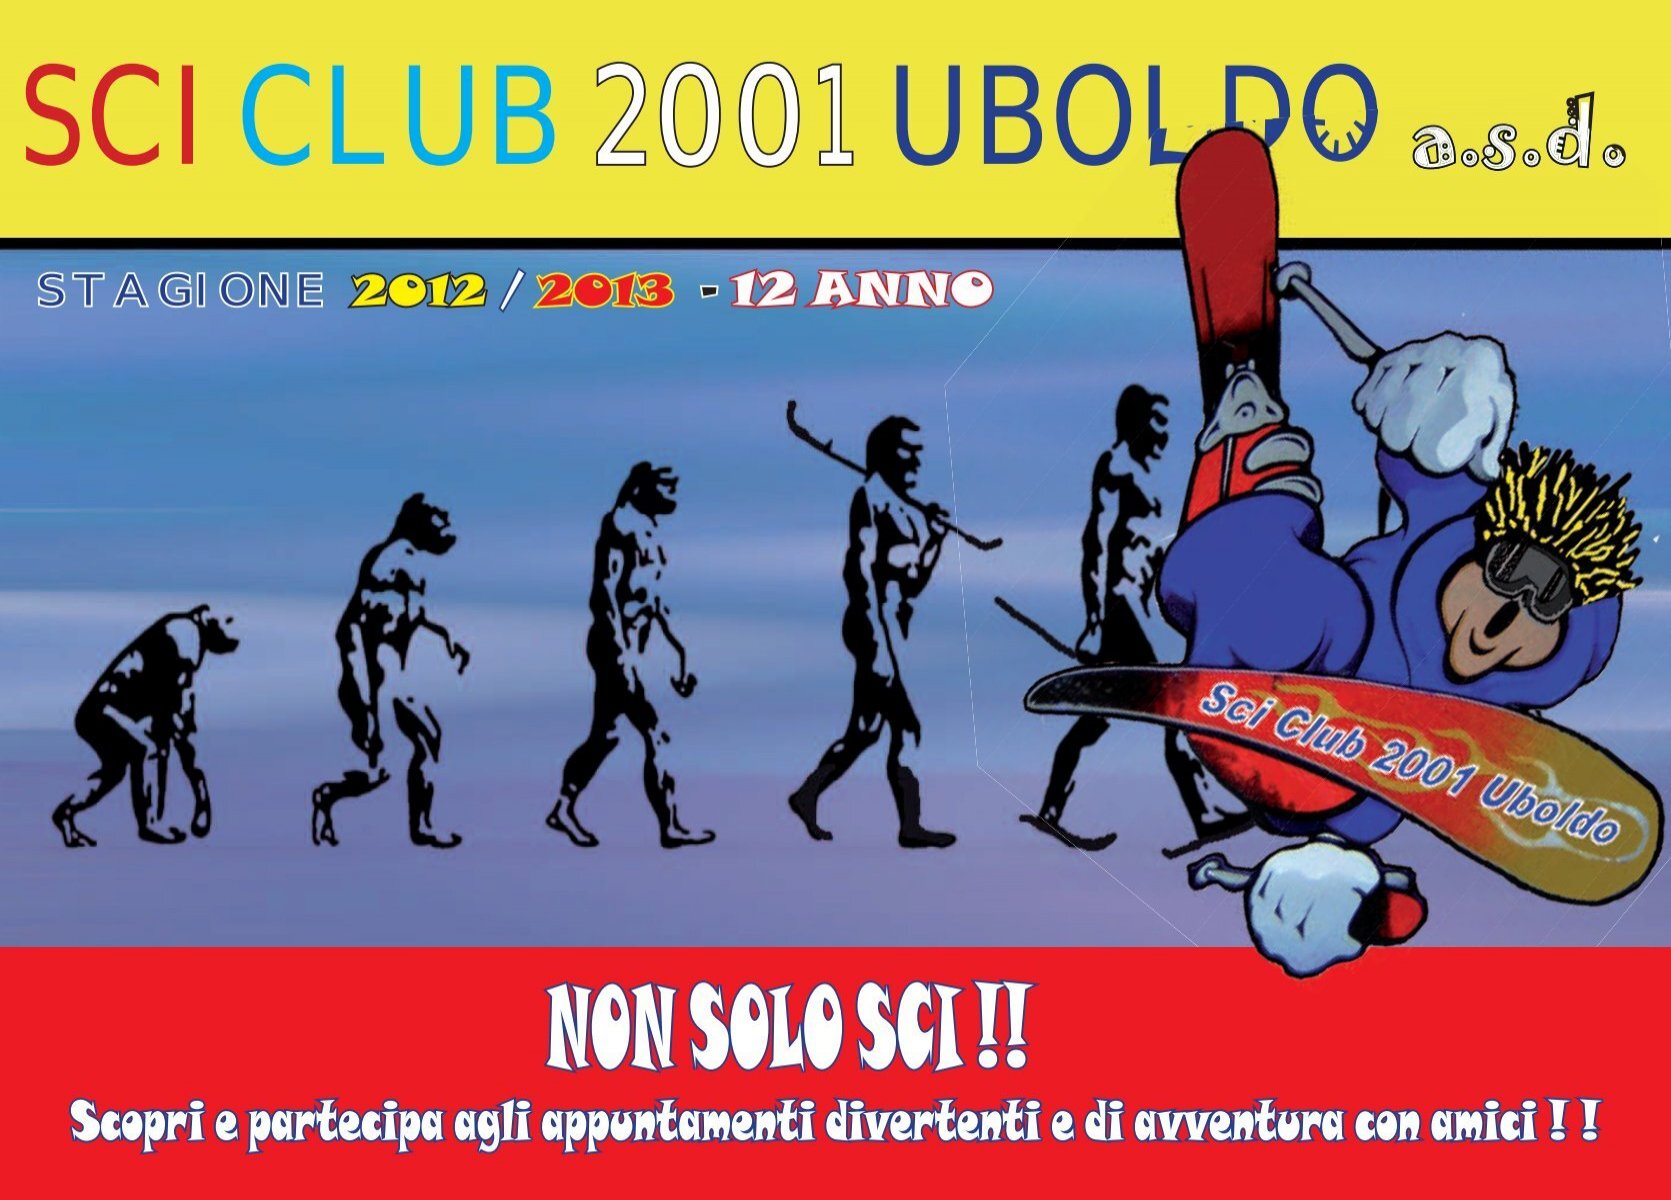 NON SOLO SCI !! - Sci Club 2001